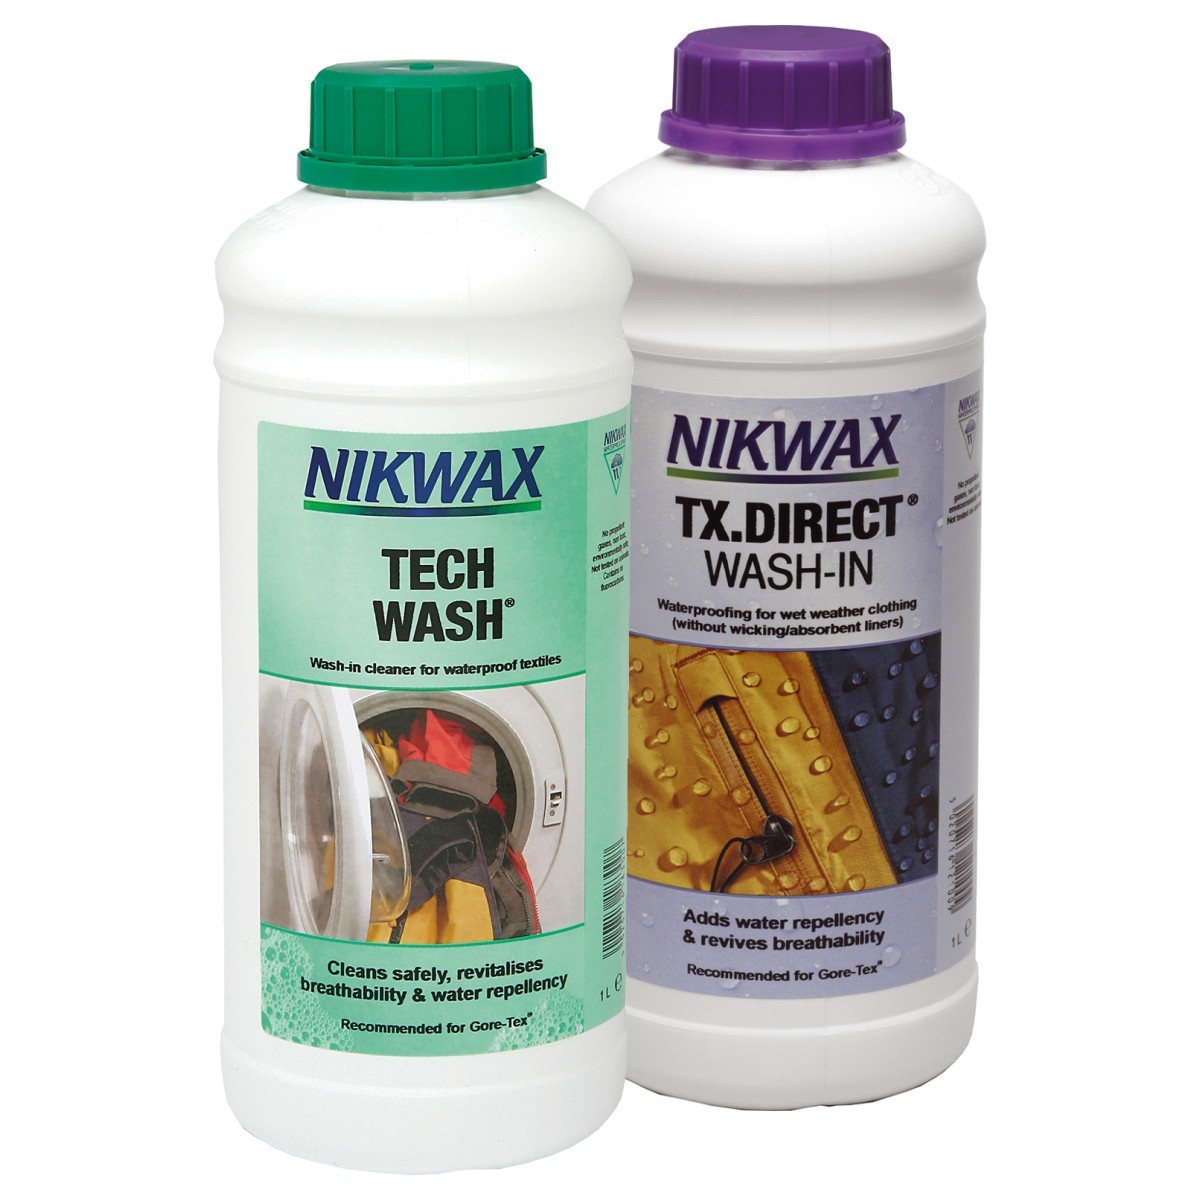 Nikwax Tech Wash + TX. Direct